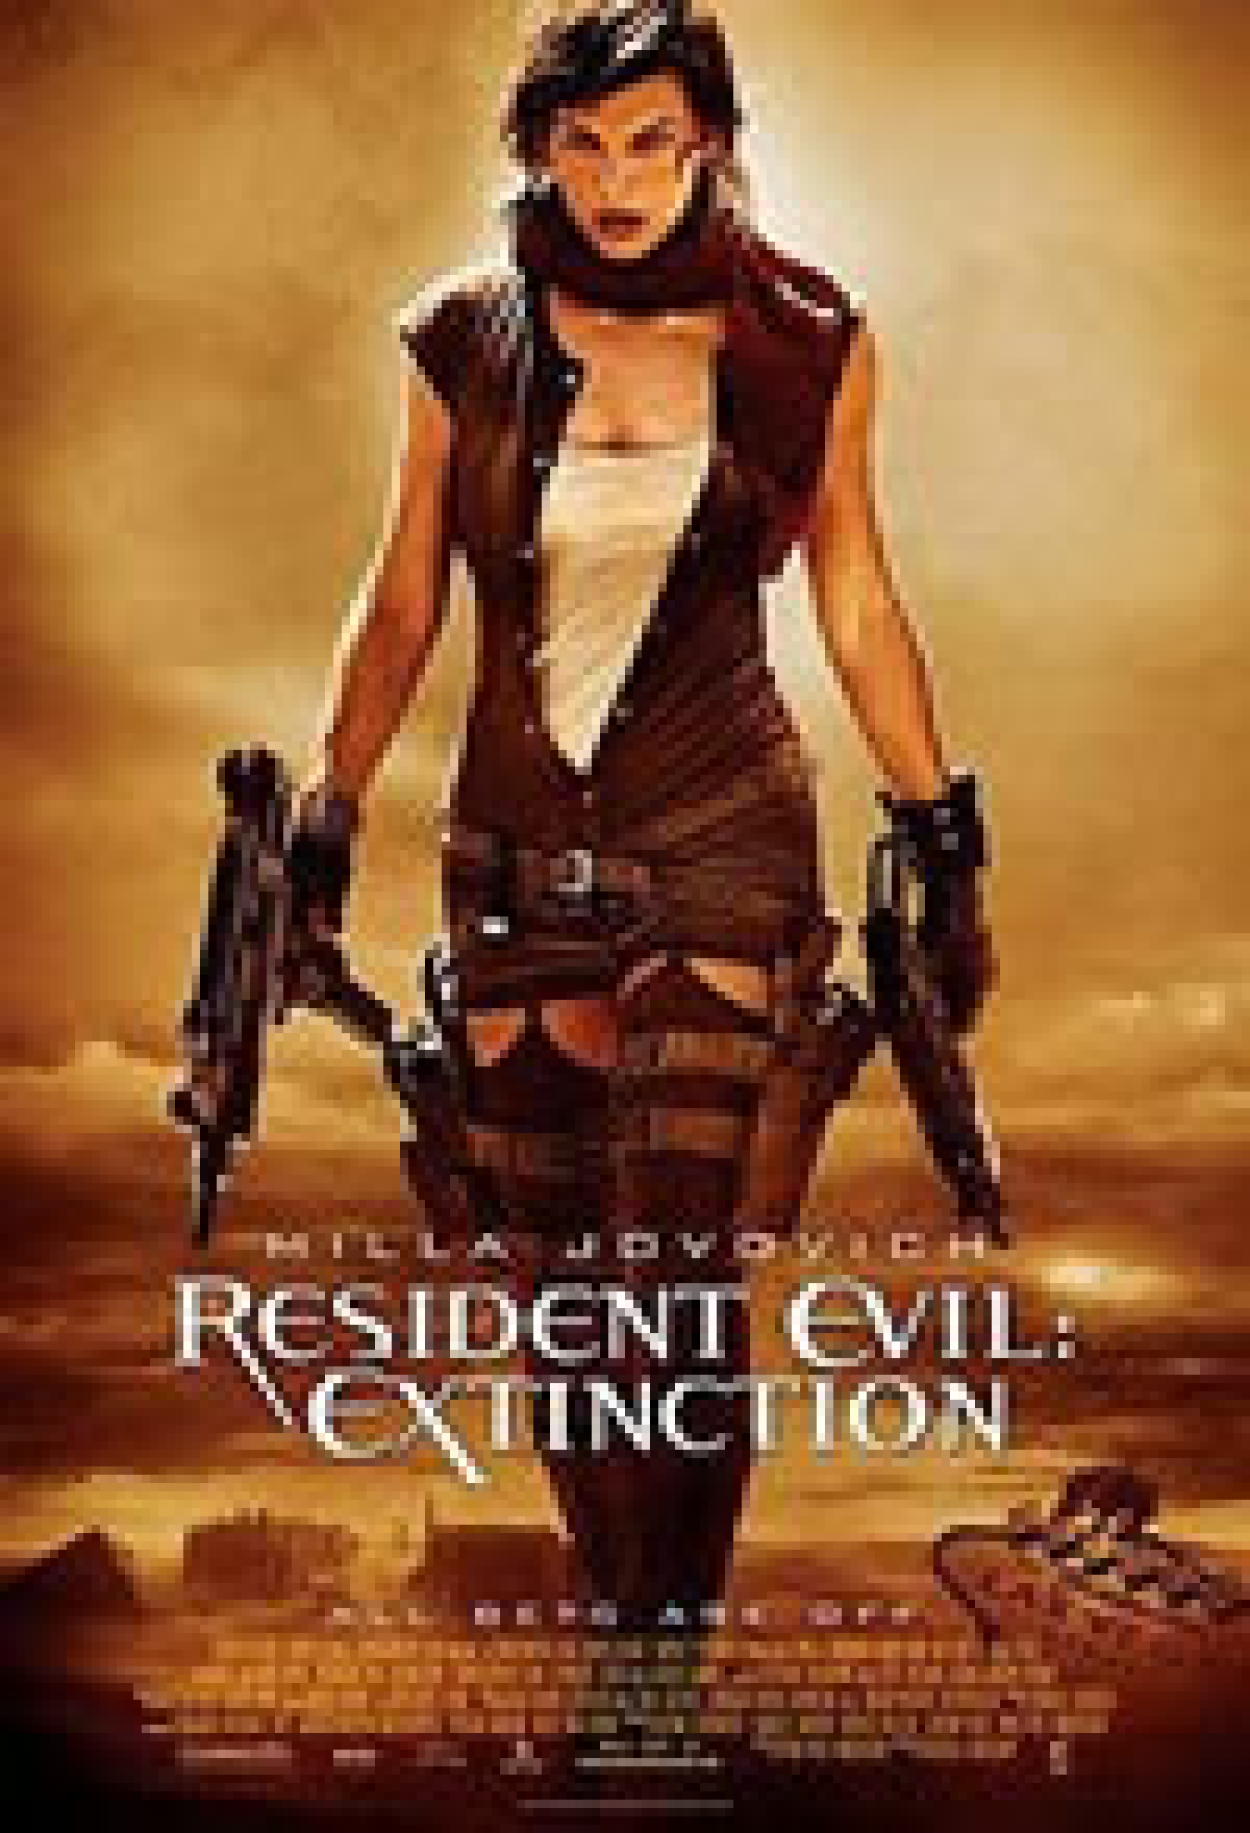 Crítica: Resident Evil 4: O Recomeço